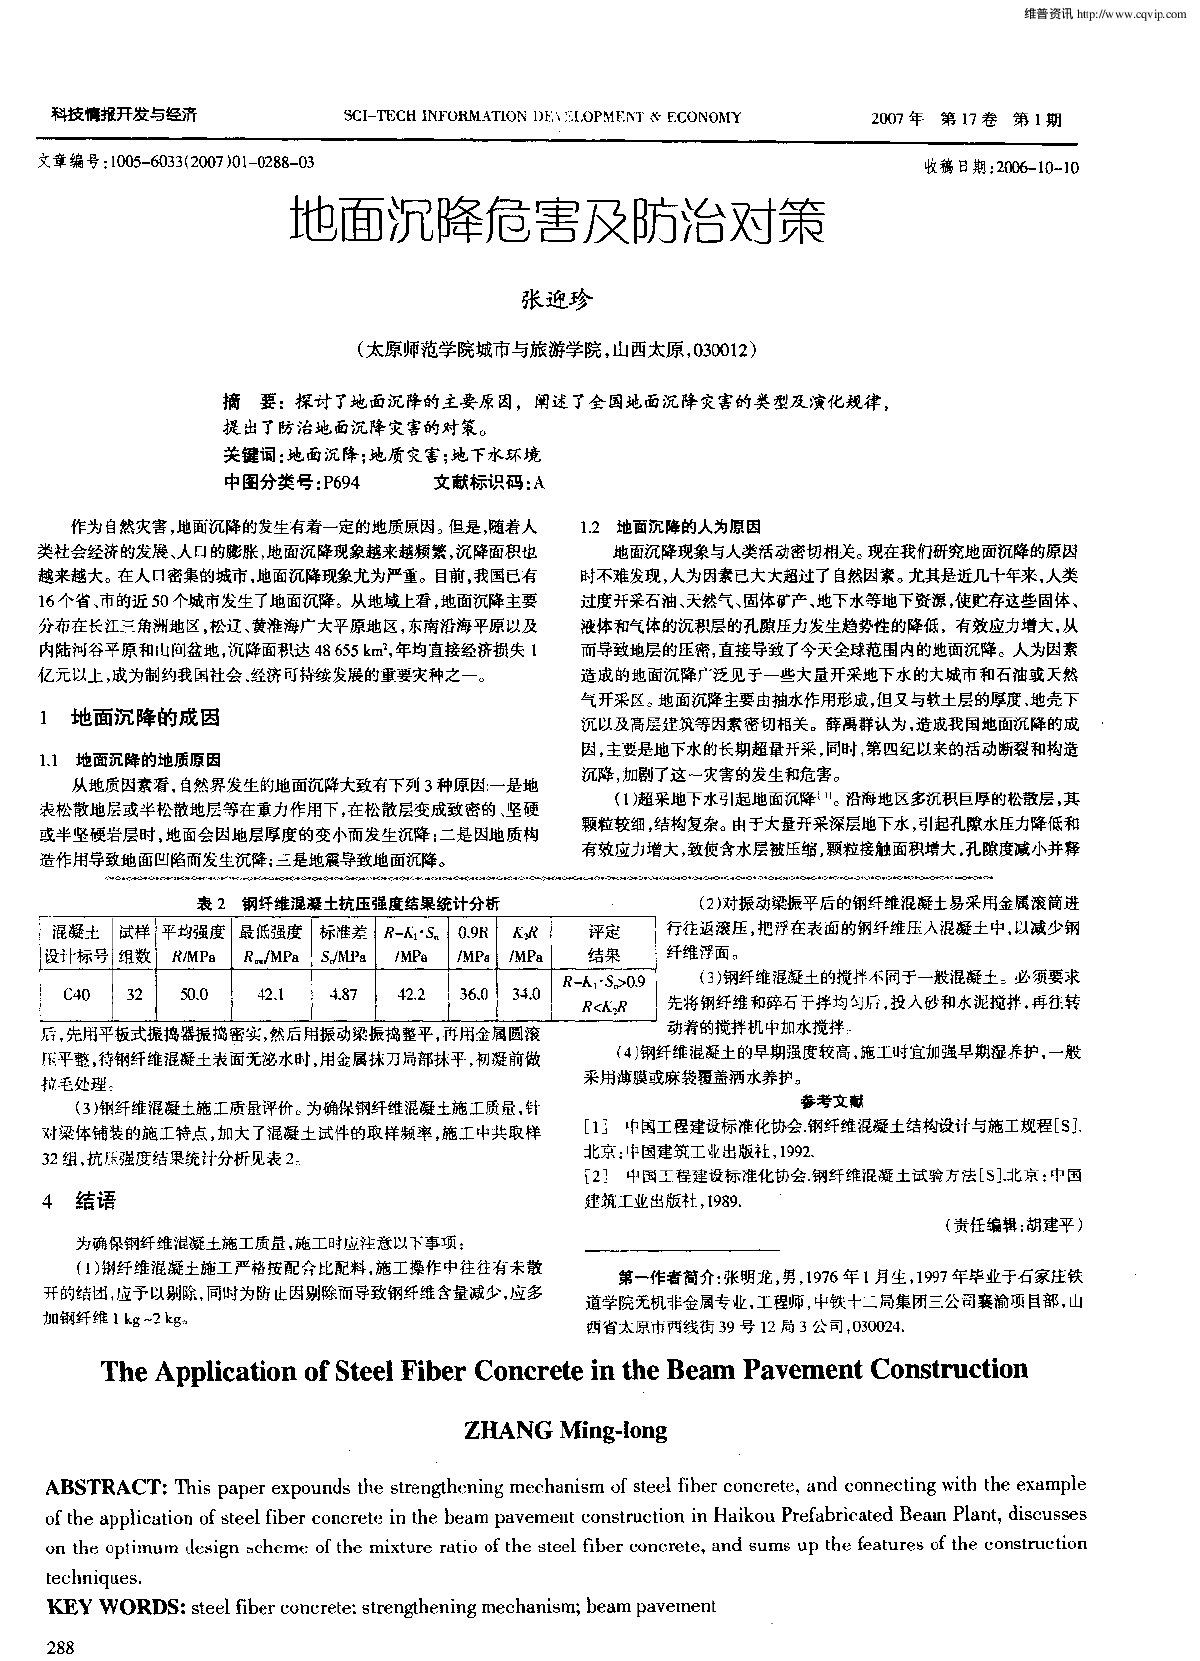 地面沉降危害及防治对策.pdf